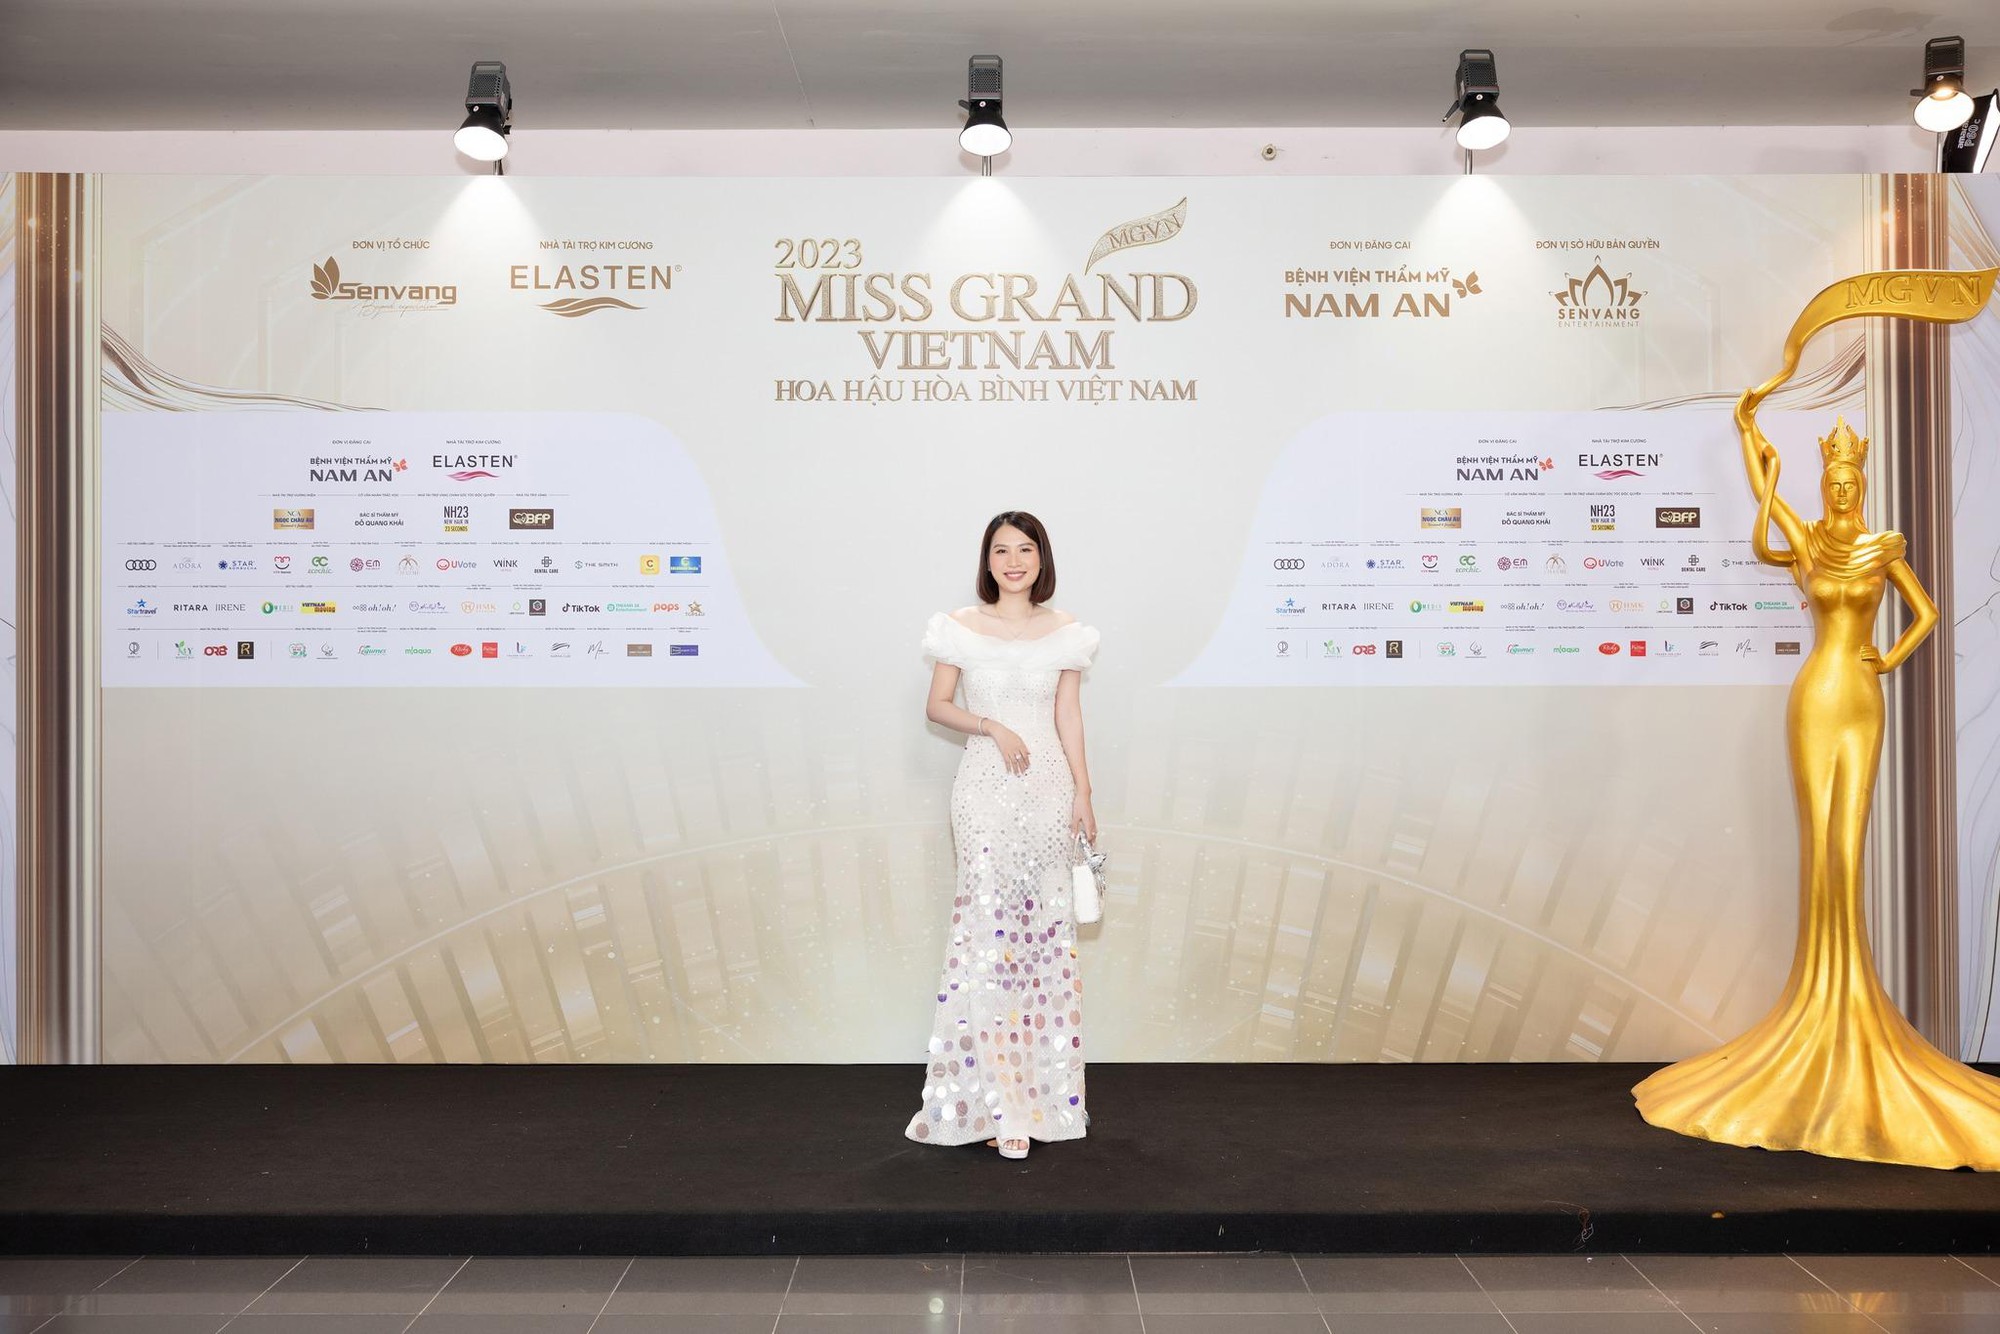 Mắt kính HMK trọn vẹn hành trình đồng hành cùng Miss Grand Vietnam 2023 - Ảnh 2.